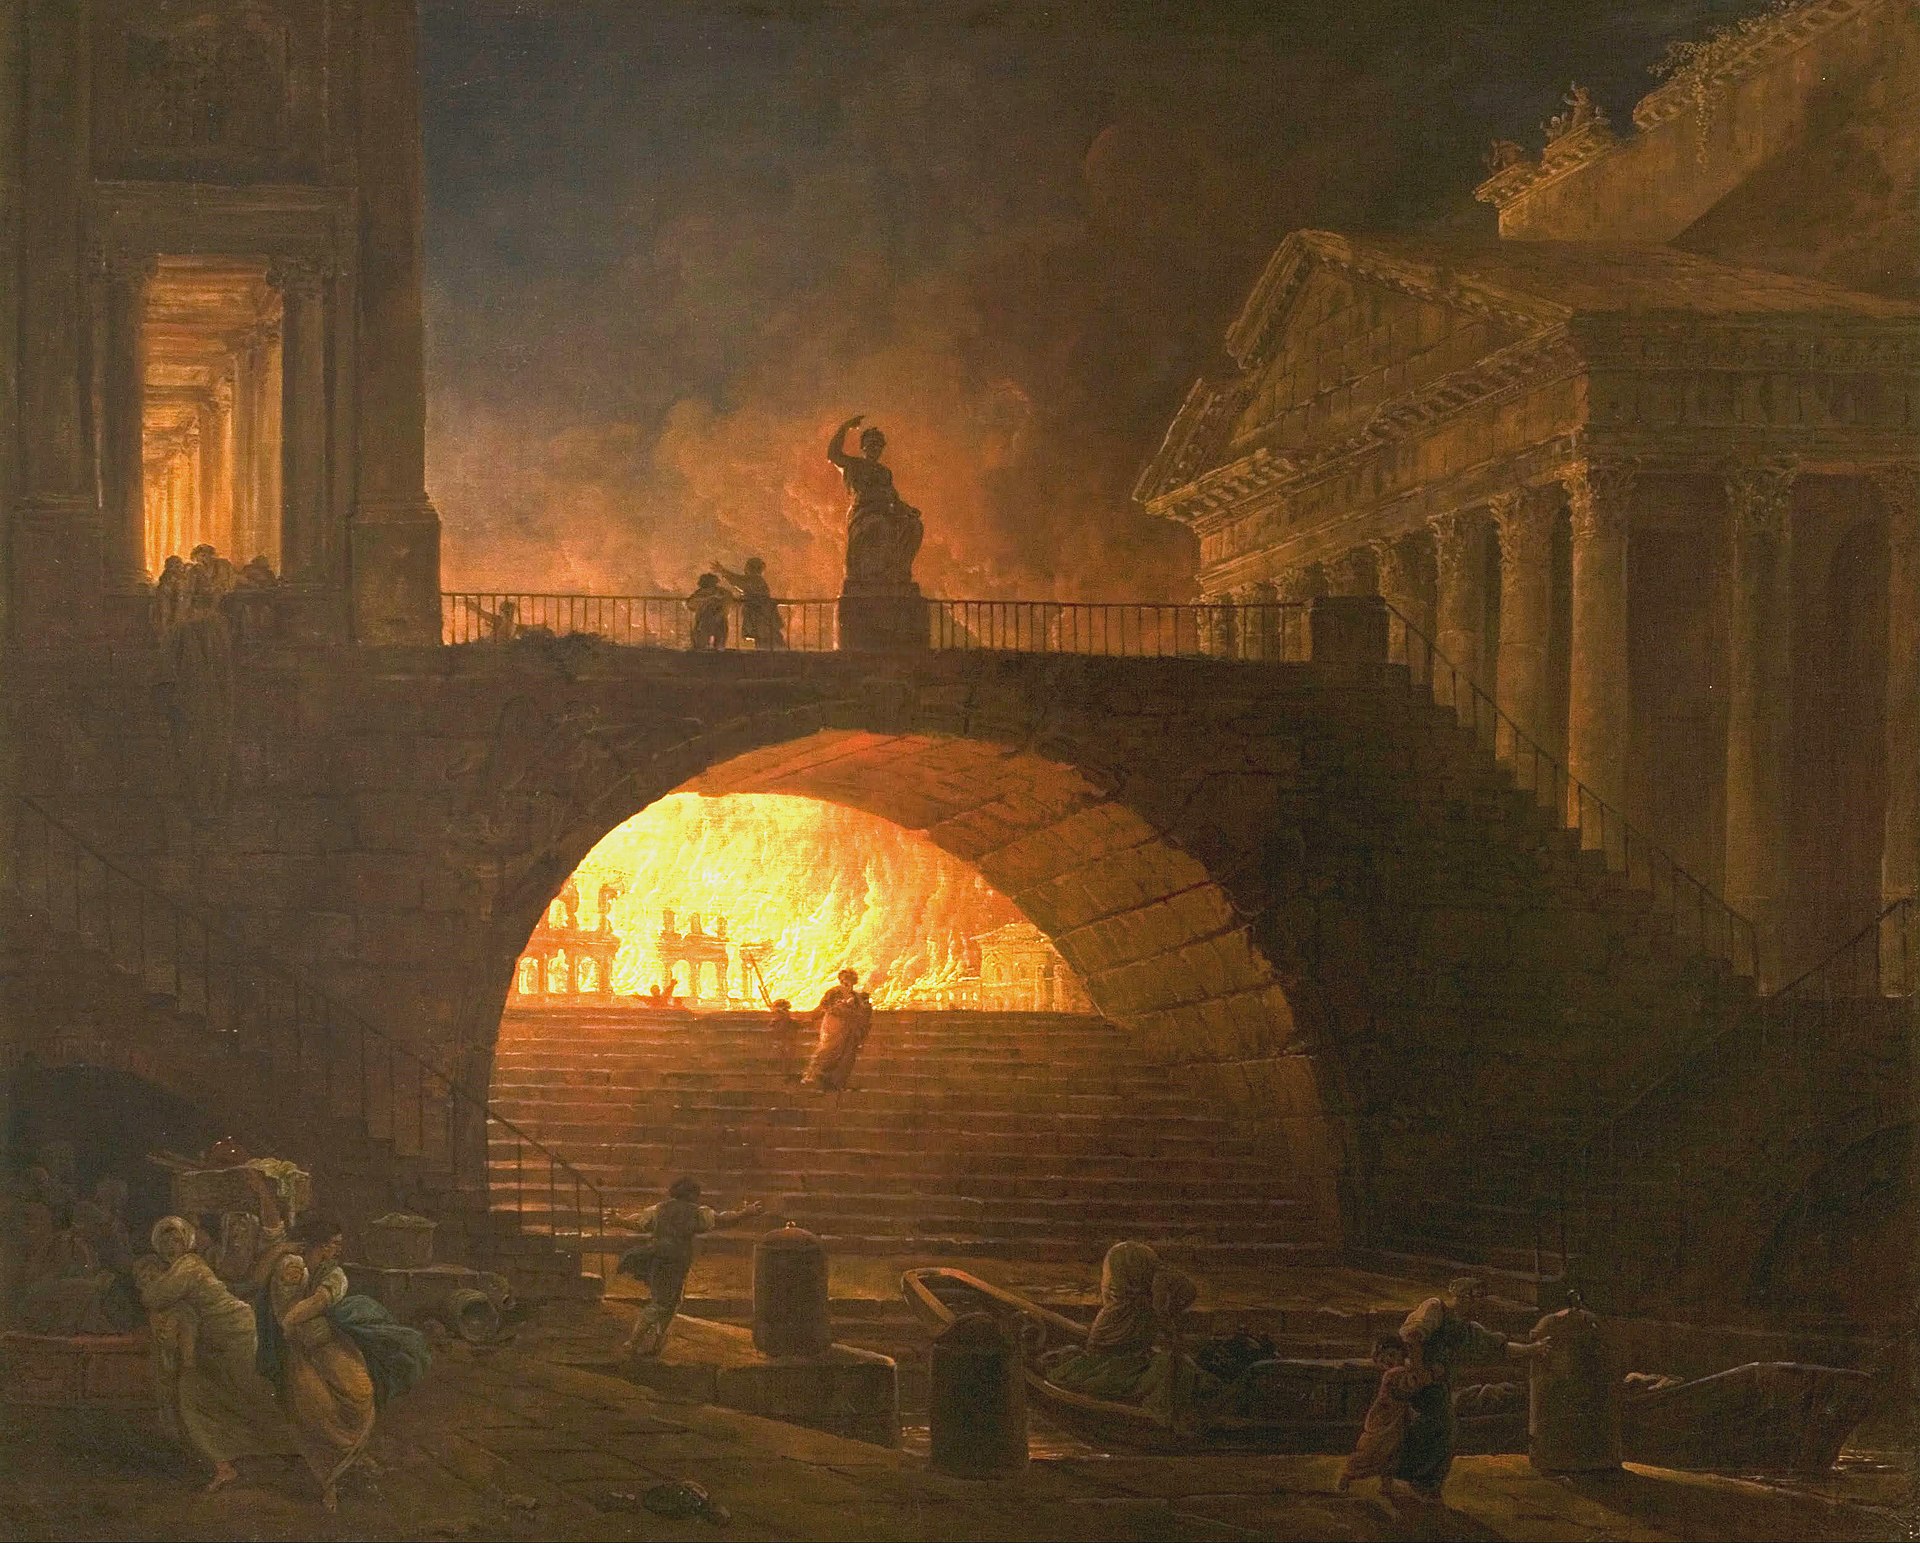 18 juillet 64 : L'incendie de Rome